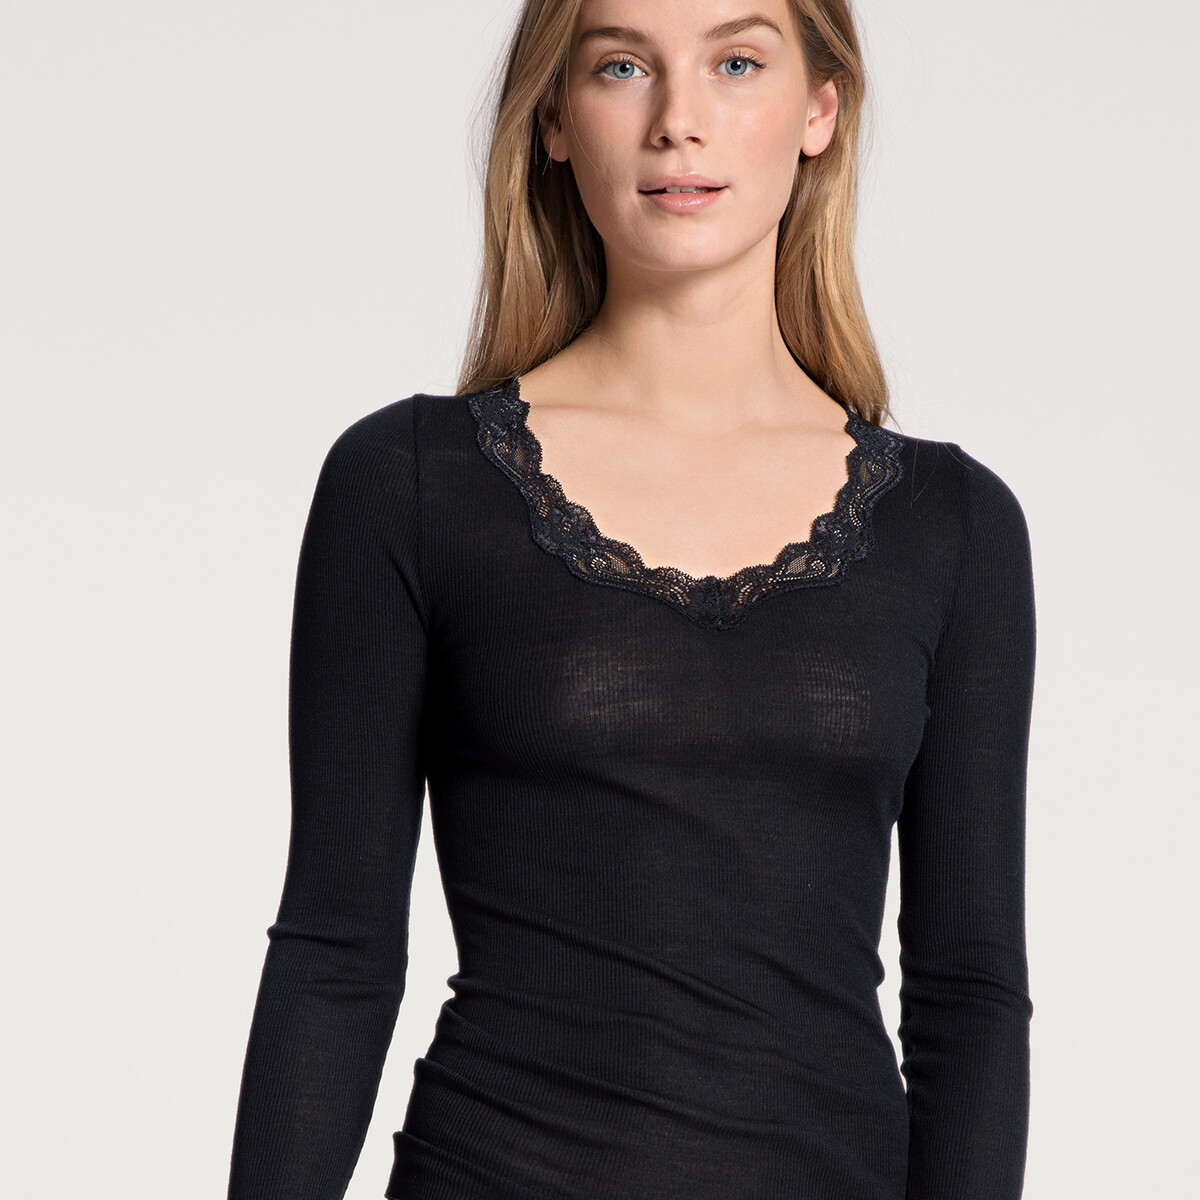 Calida Bluse, Farbe: Schwarz, Größe: L, Damen von Calida